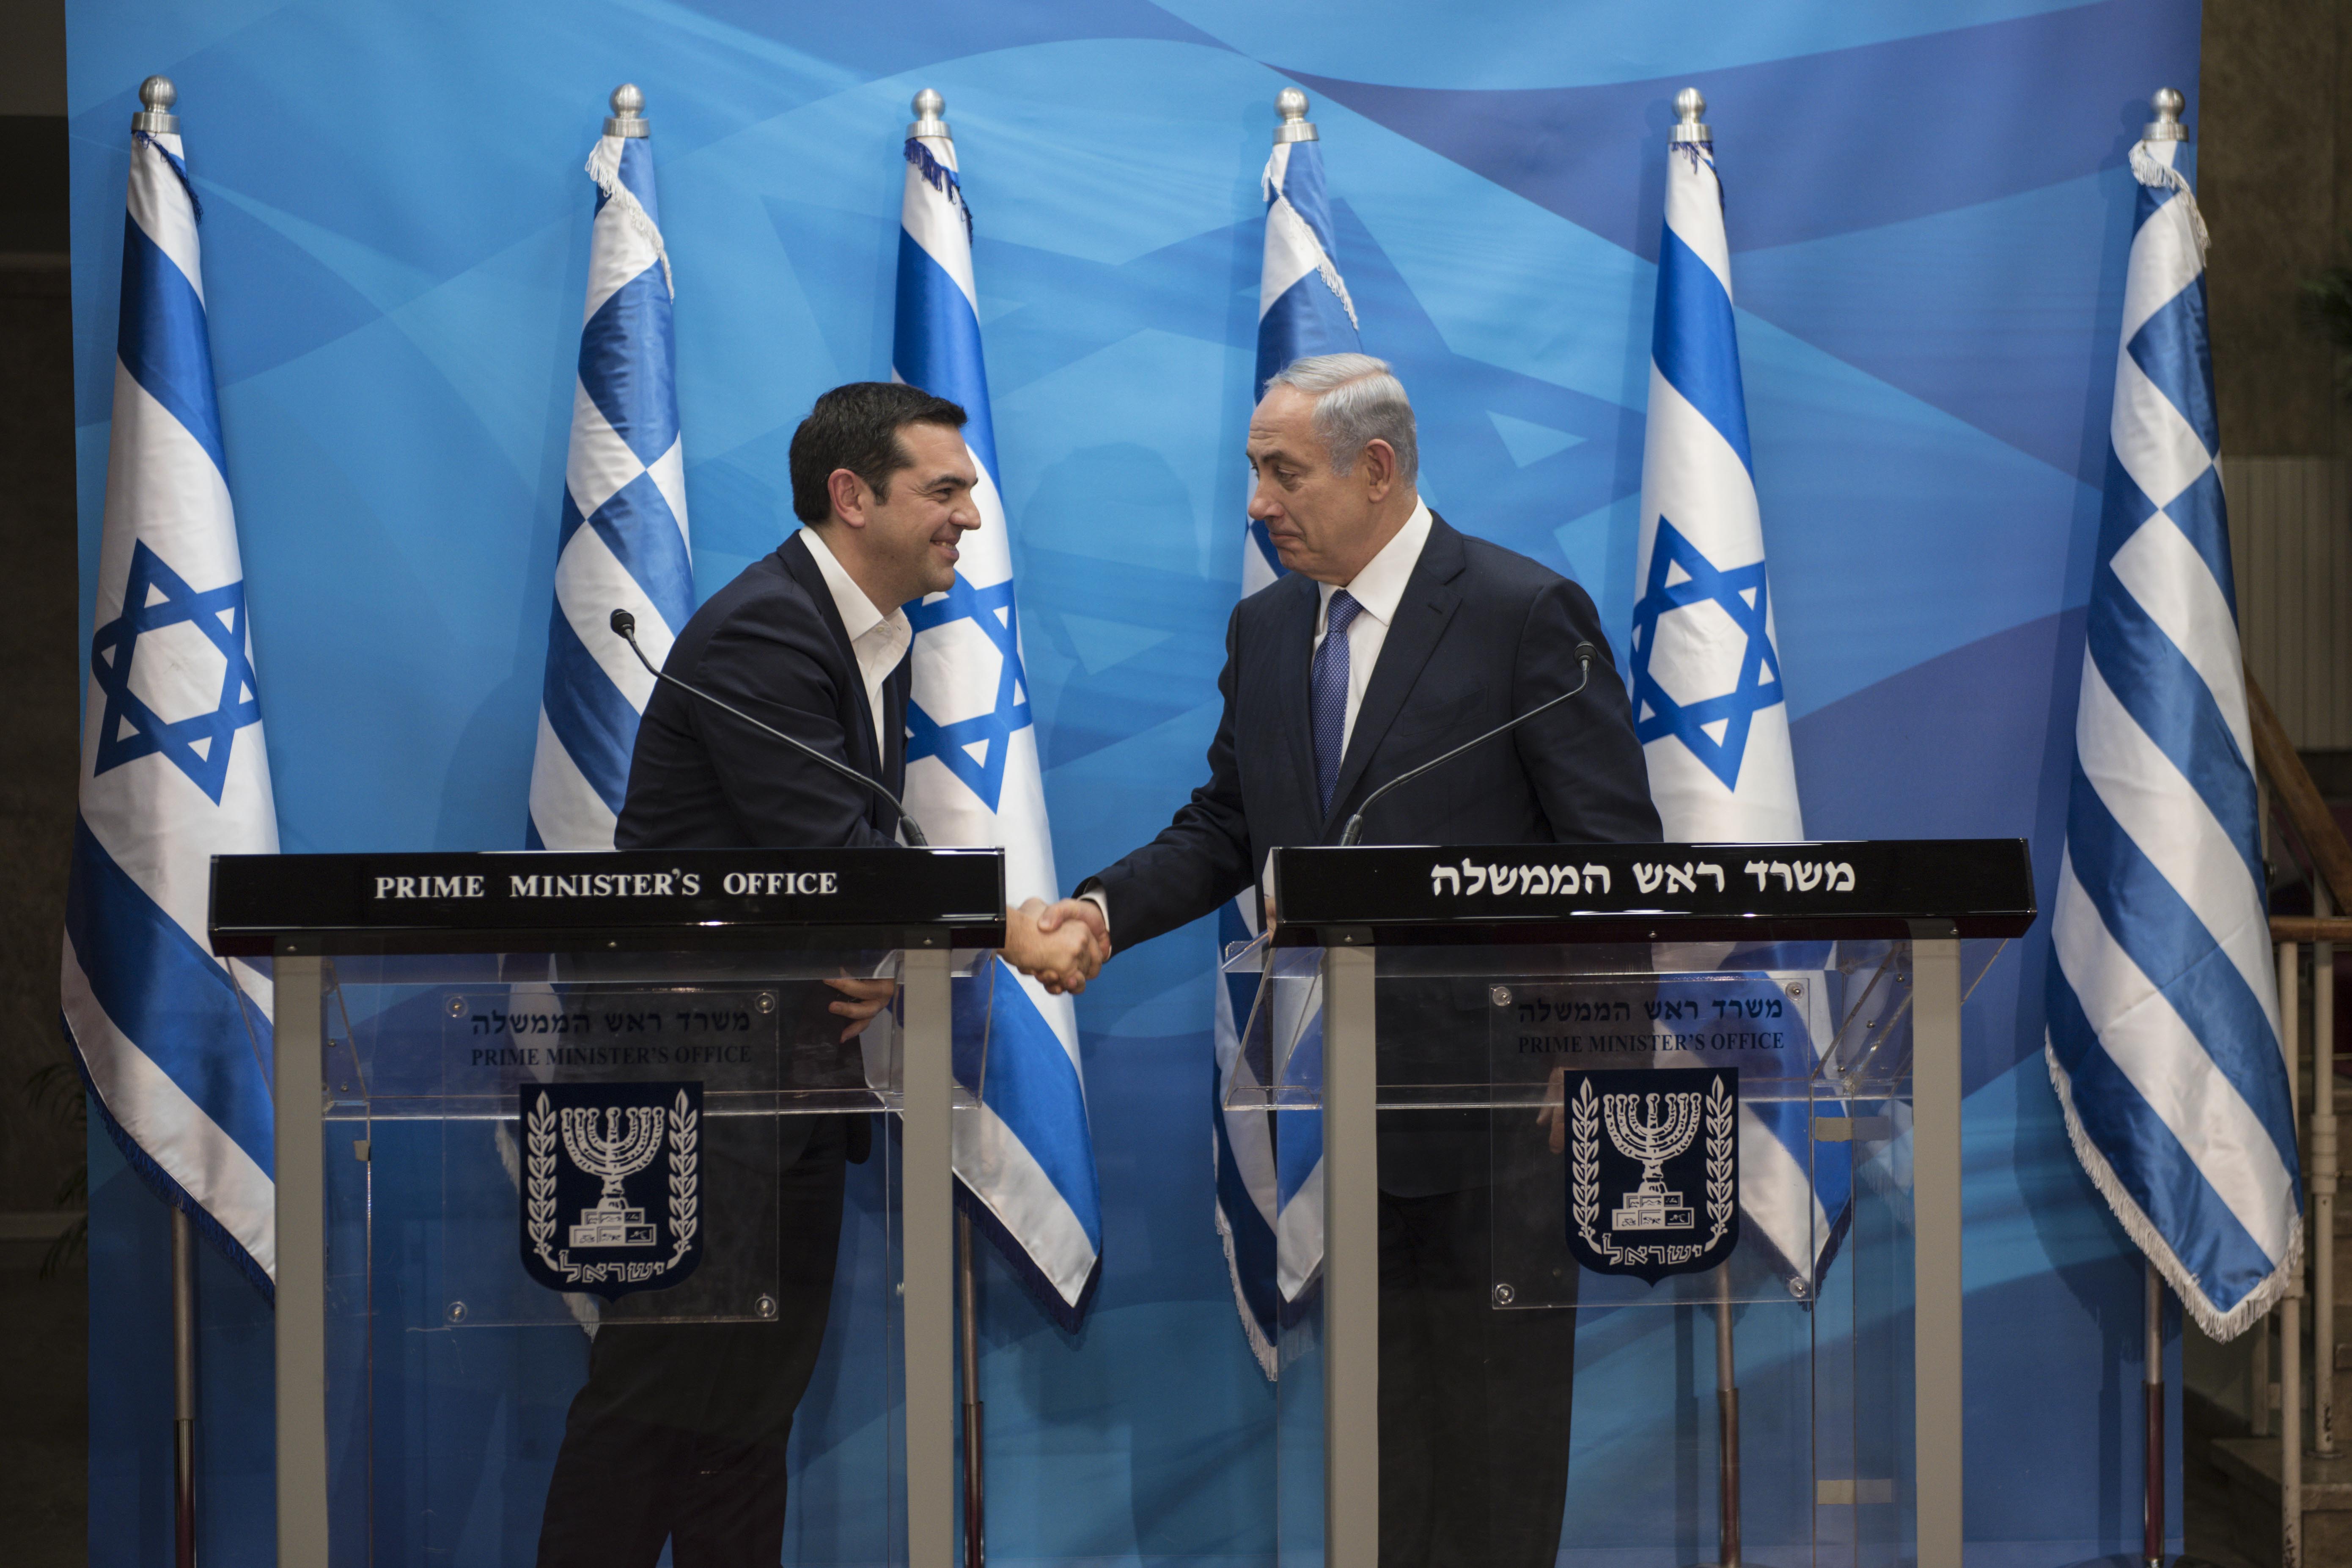 Αλ. Τσίπρας: Ελλάδα και Ισραήλ διαθέτουν τεράστιες δυνατότητες ενεργειακής συνεργασίας